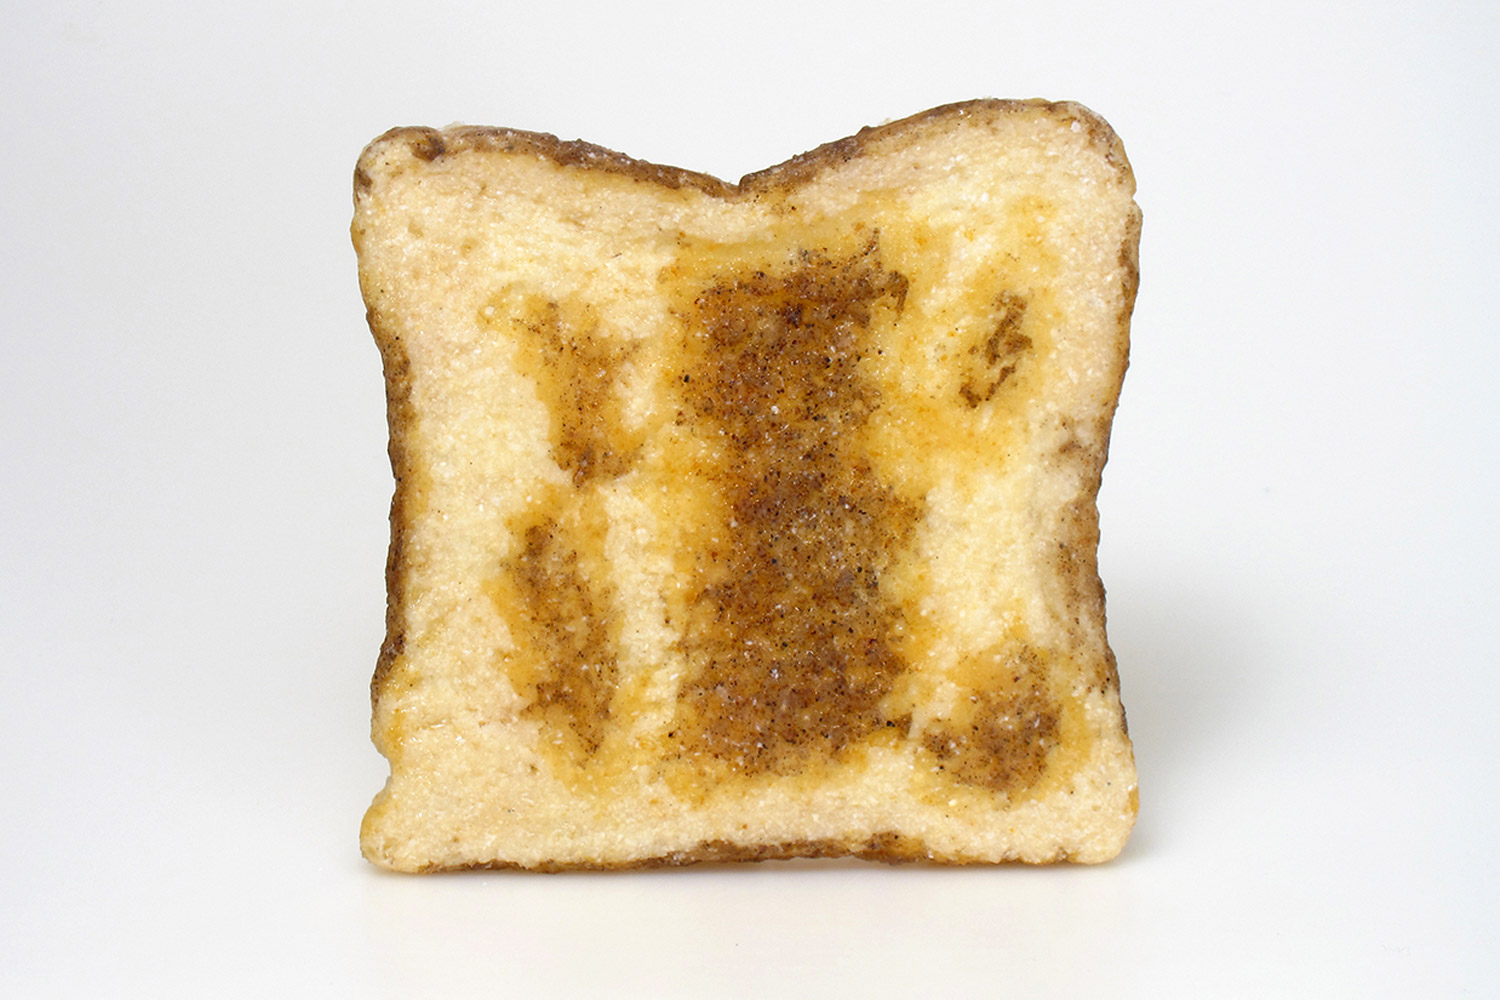 gisbert_stach_golden_toast